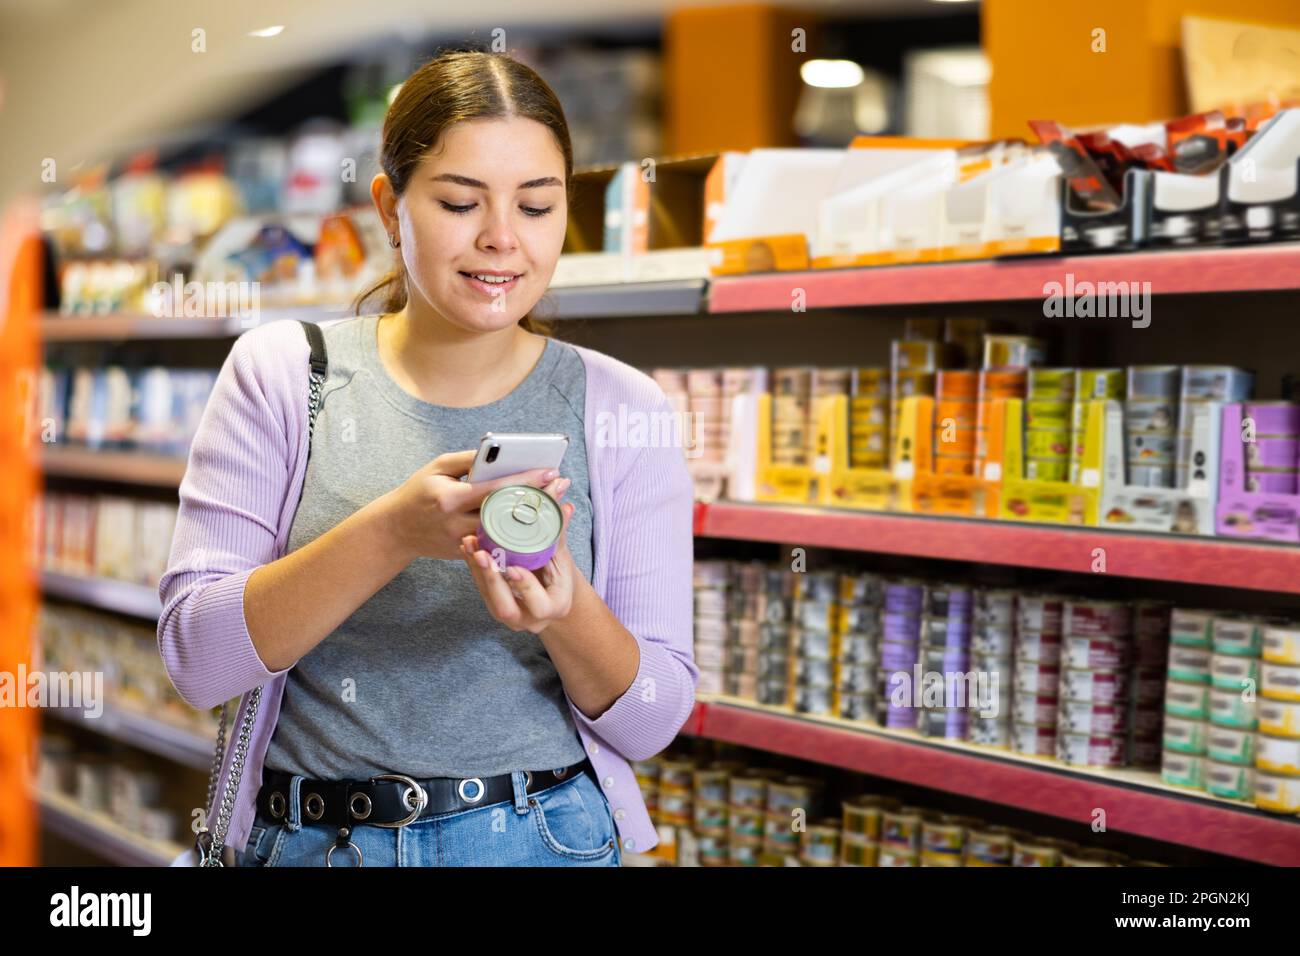 Junge glückliche Frau scannt qr-Code auf Dosenfutter in der Tierhandlung Stockfoto